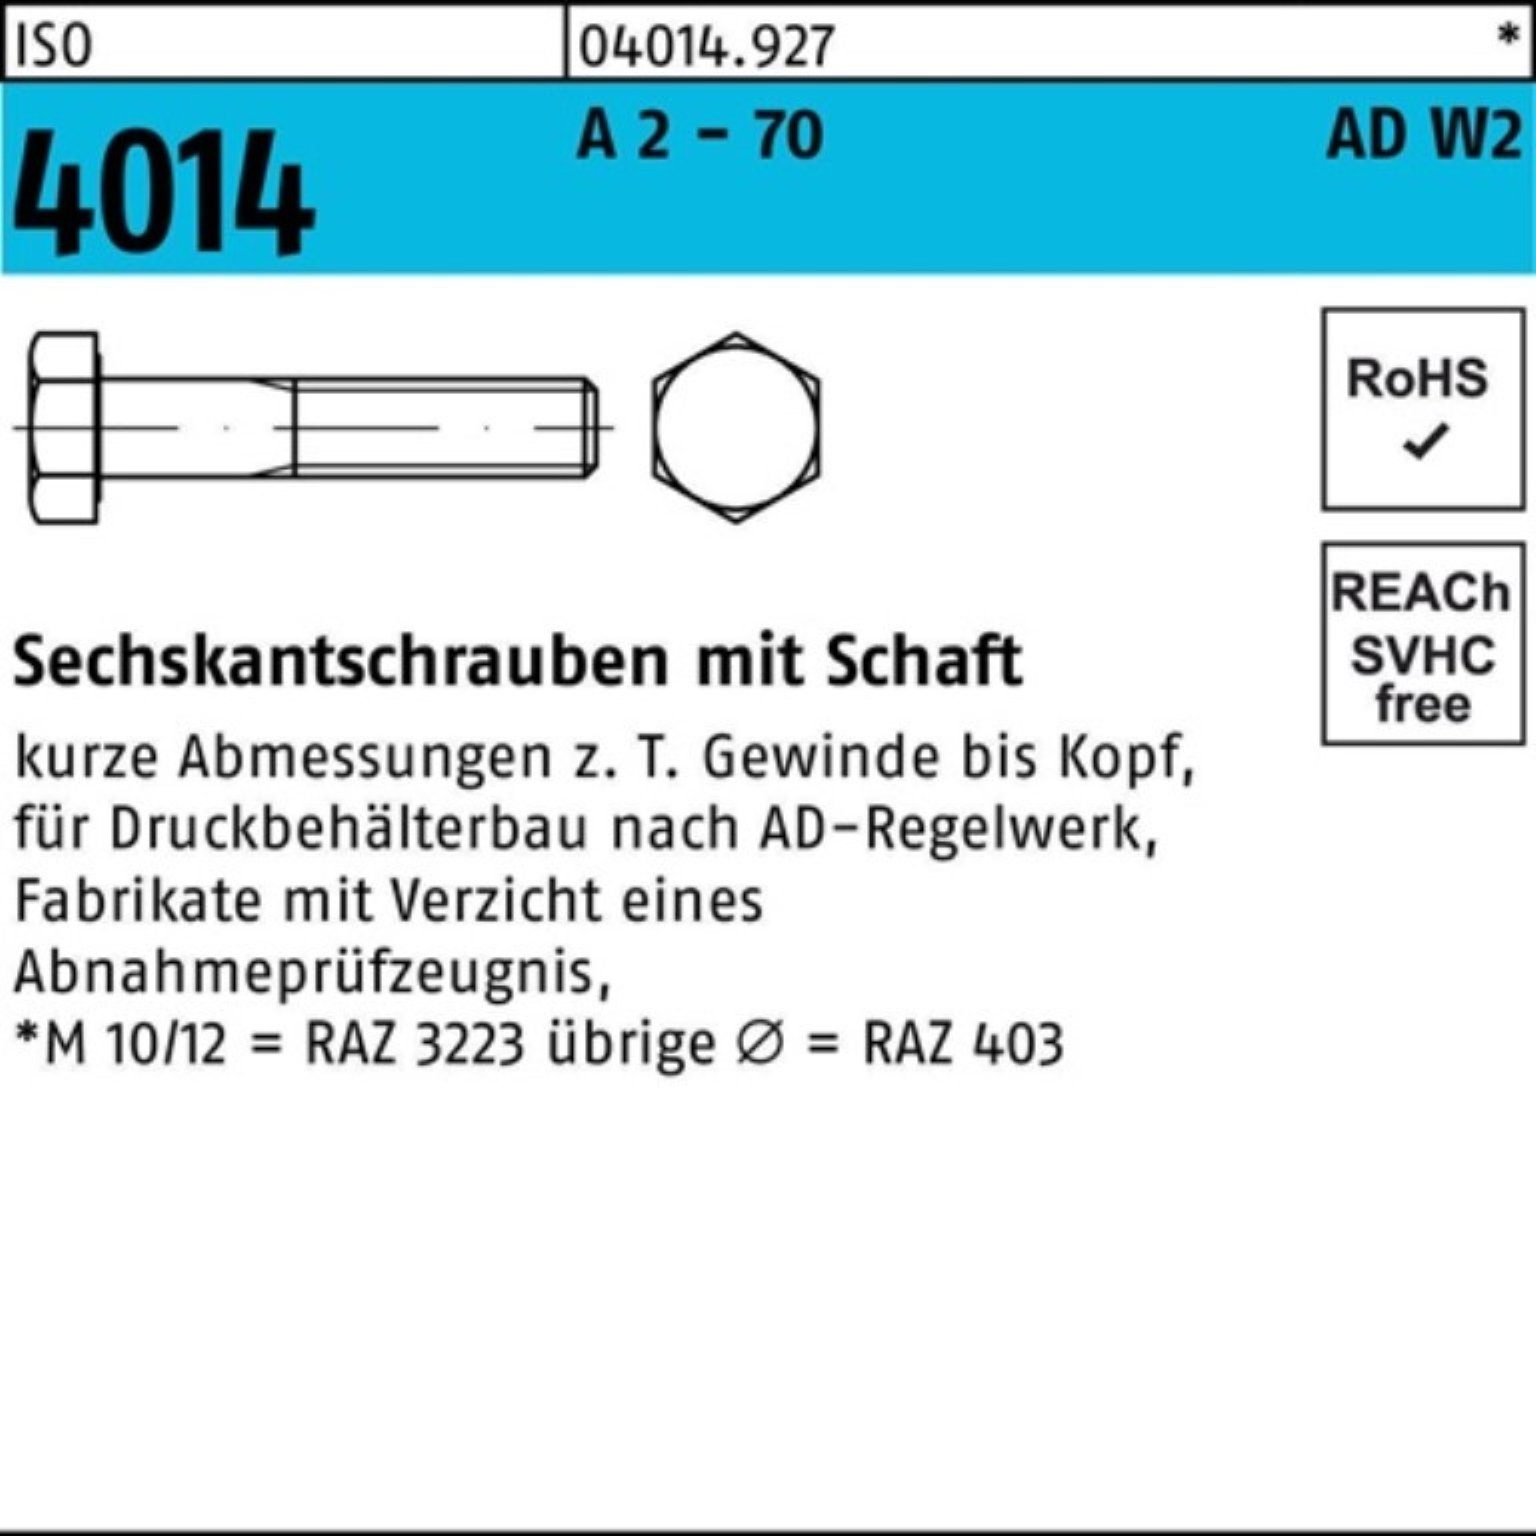 25 M12x A - Schaft Sechskantschraube 2 4014 Bufab AD-W2 ISO 85 100er 70 Sechskantschraube Pack